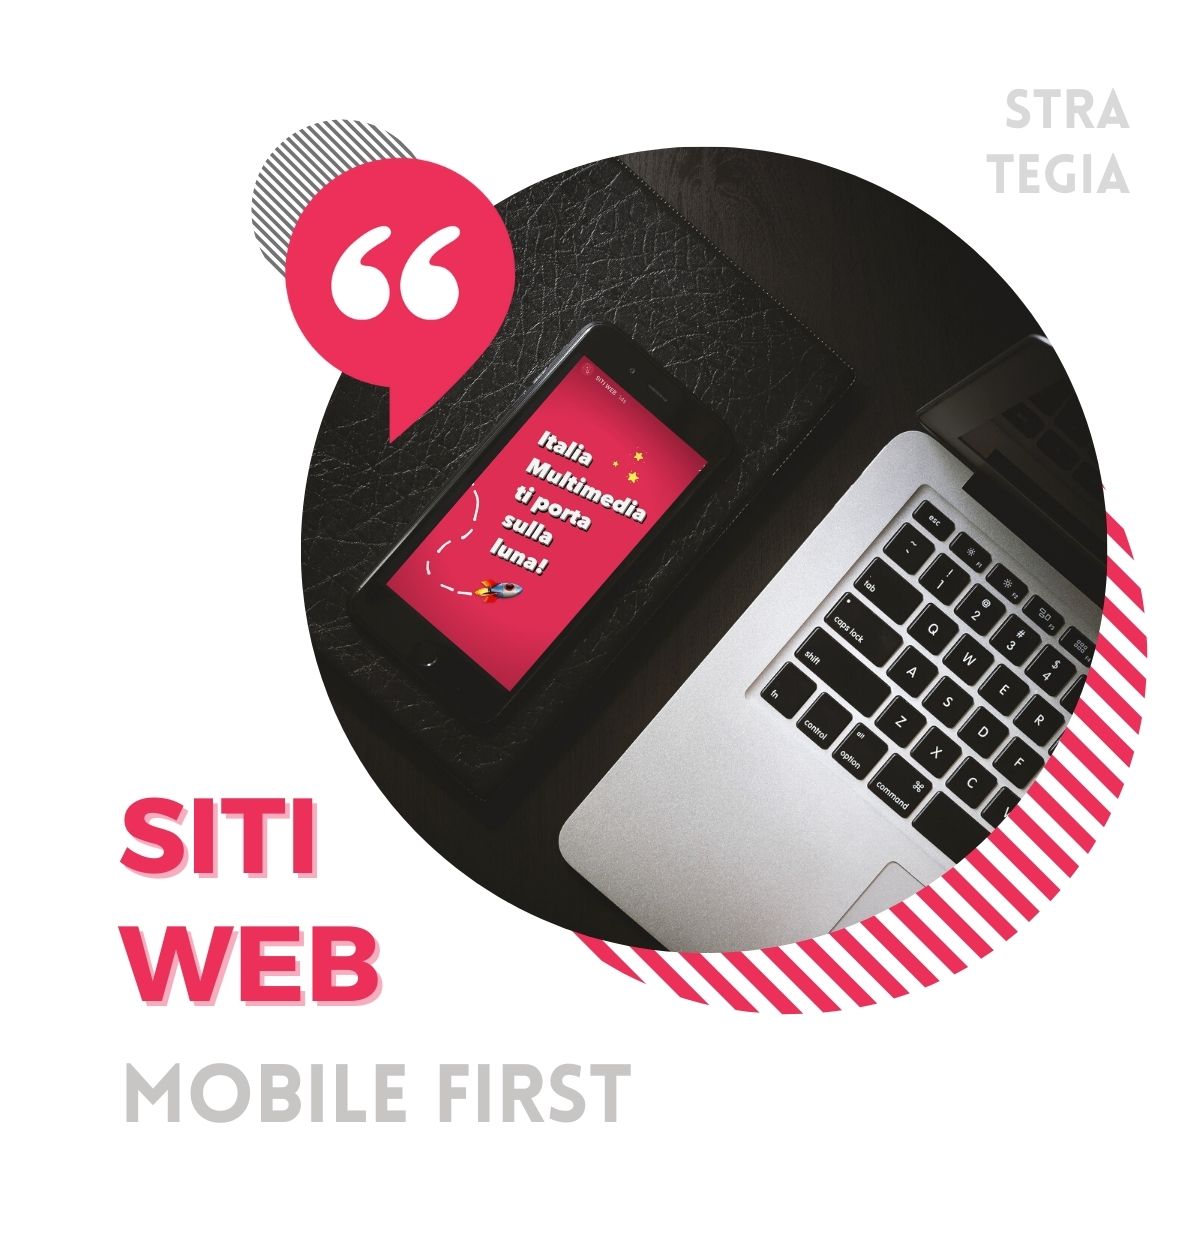 Realizzazione Siti Web responsive, ottimizzati SEO, mobile first